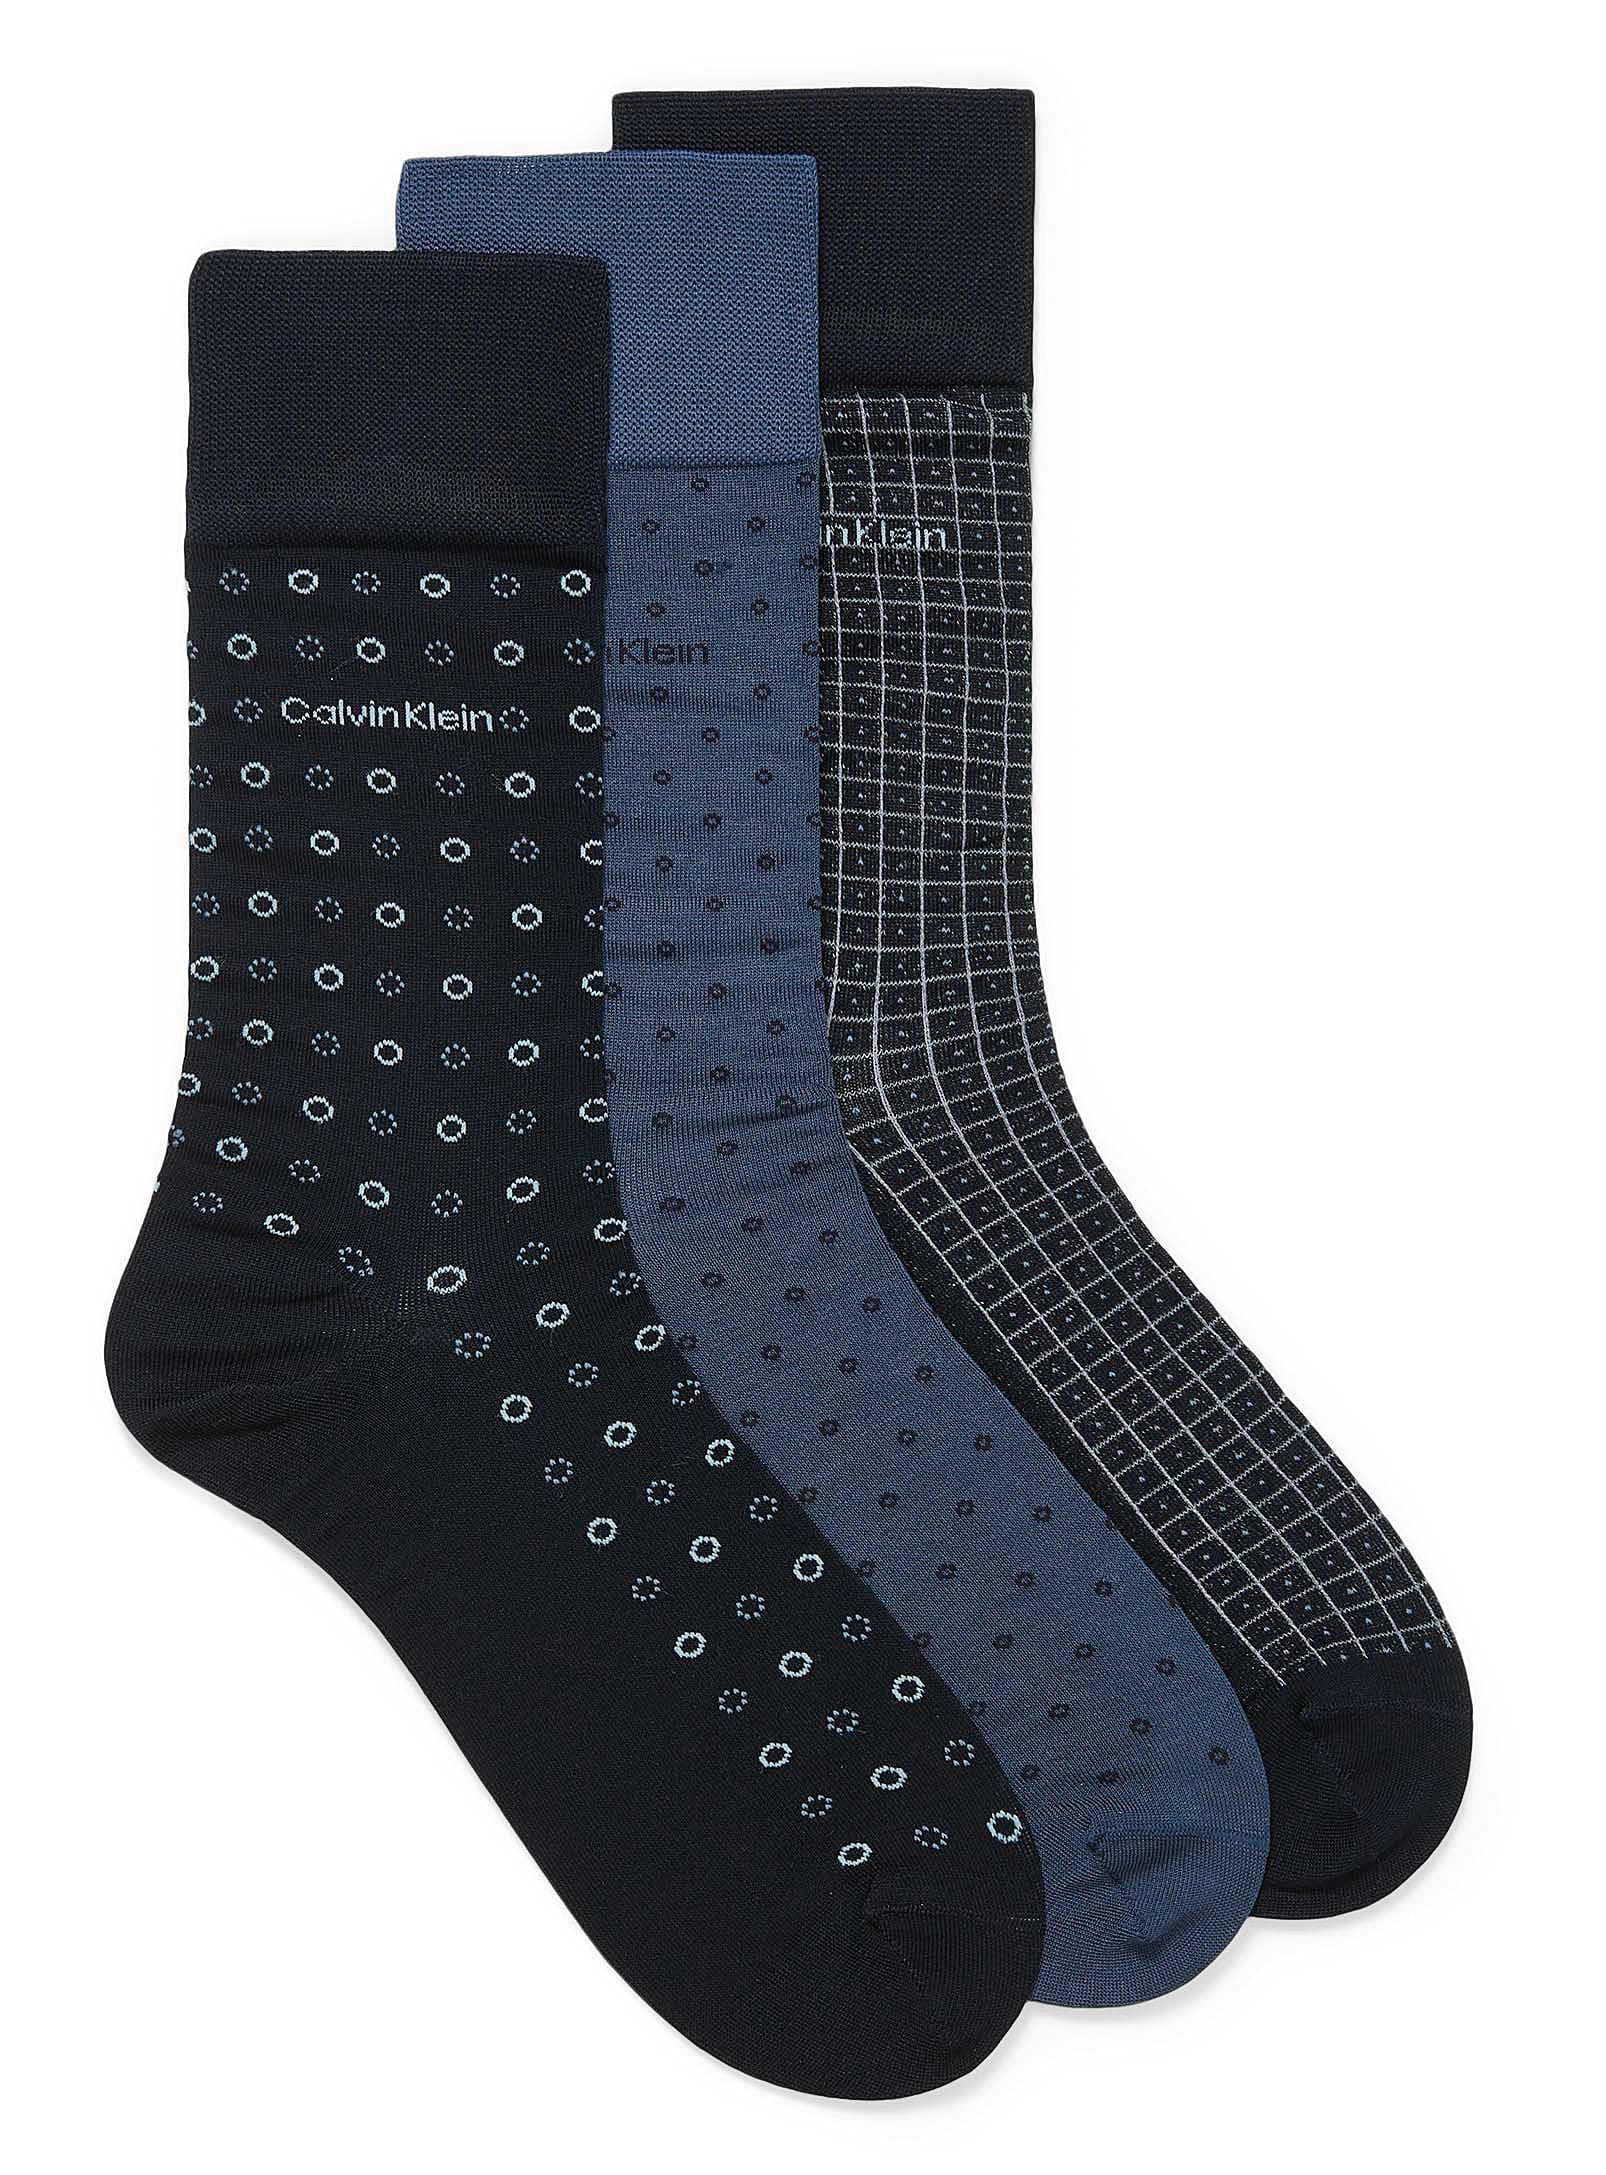 Calvin Klein Mercerized Cotton Blend 3-Pack Dress Socks -  CKM201DR02C001/002 - Navy 001